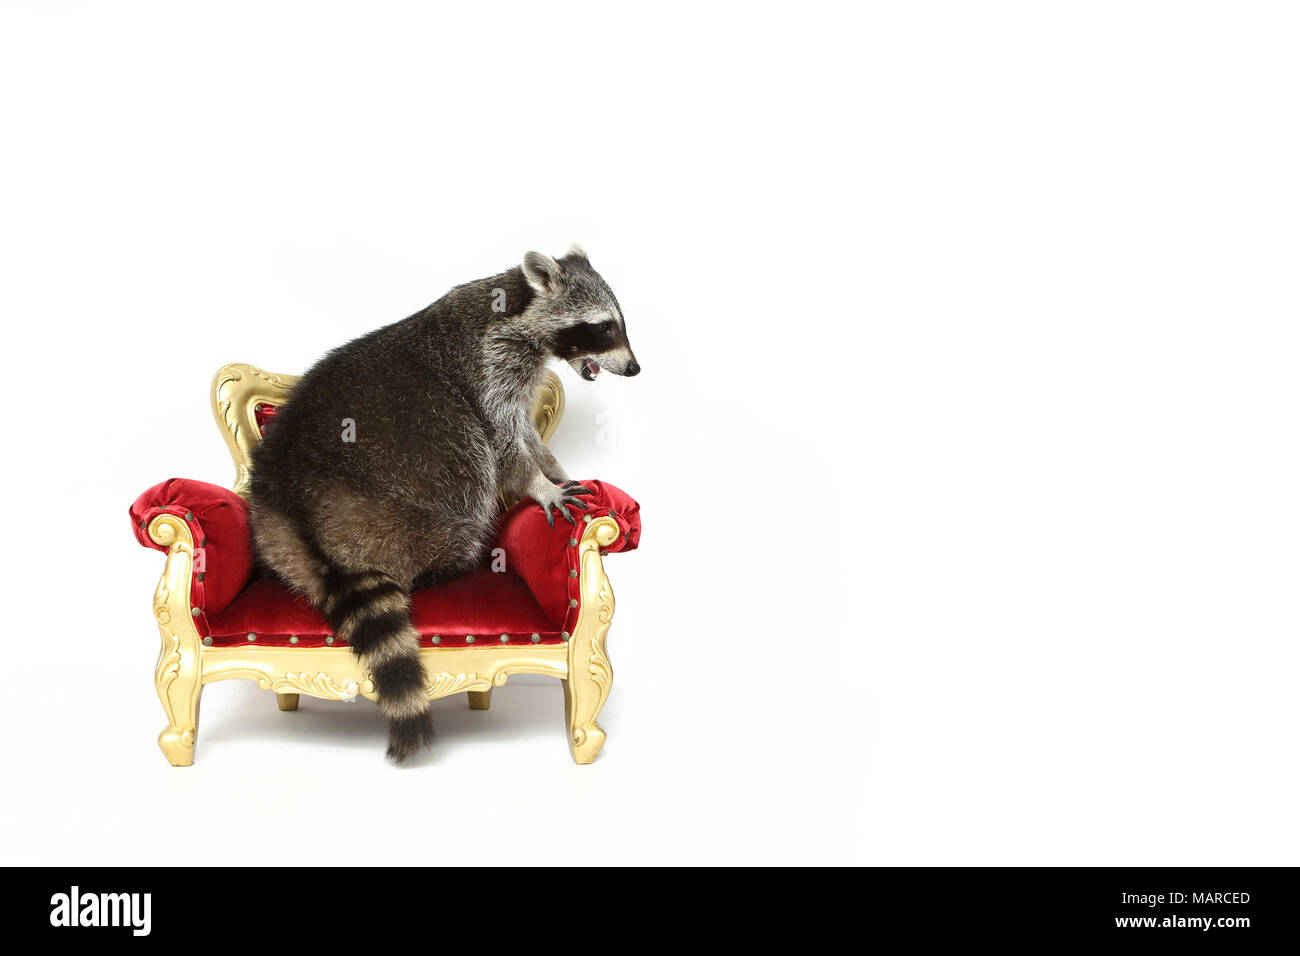 Le raton laveur (Procyon lotor). Des profils assise sur un fauteuil baroque. Studio photo sur un fond blanc. Allemagne Banque D'Images